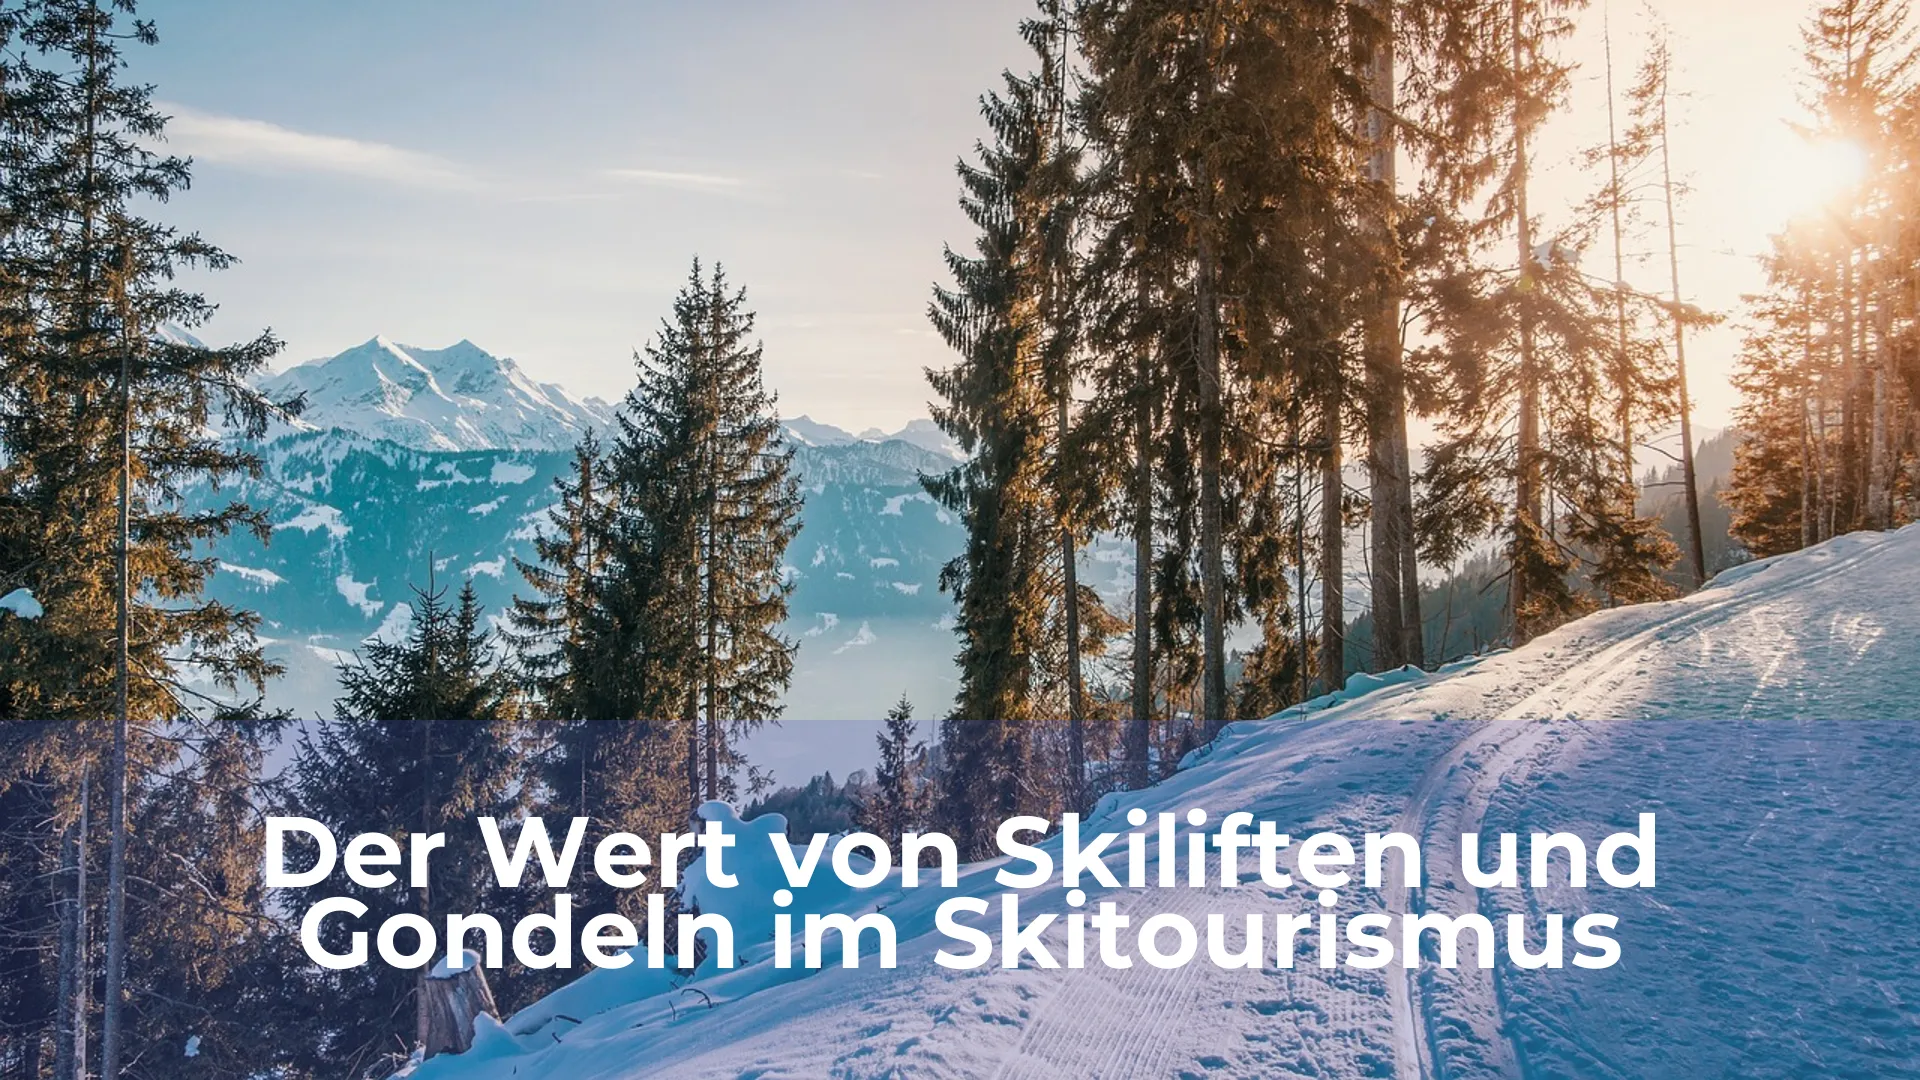 Der wert von skiliften und gondeln im skitourismus